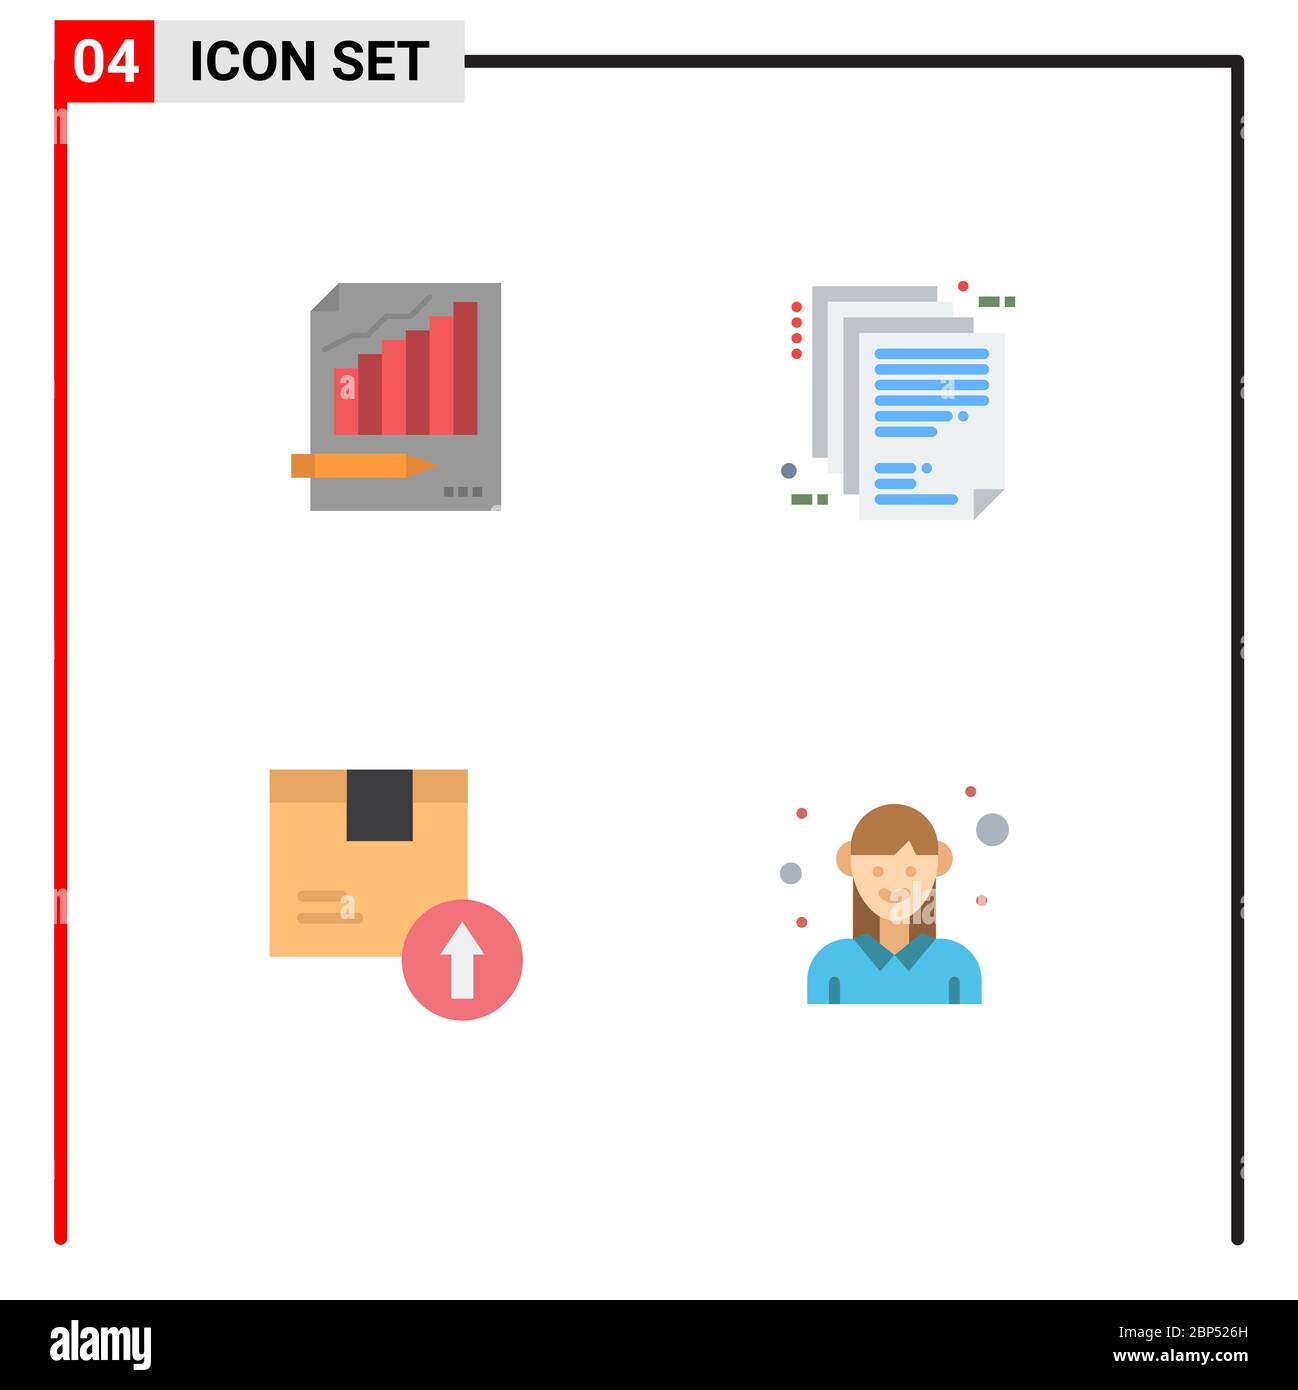 Set von 4 Commercial Flat Icons Pack für Statistiken, Unternehmensarchitektur, Business, Markt, Papier editierbare Vektor Design-Elemente Stock Vektor